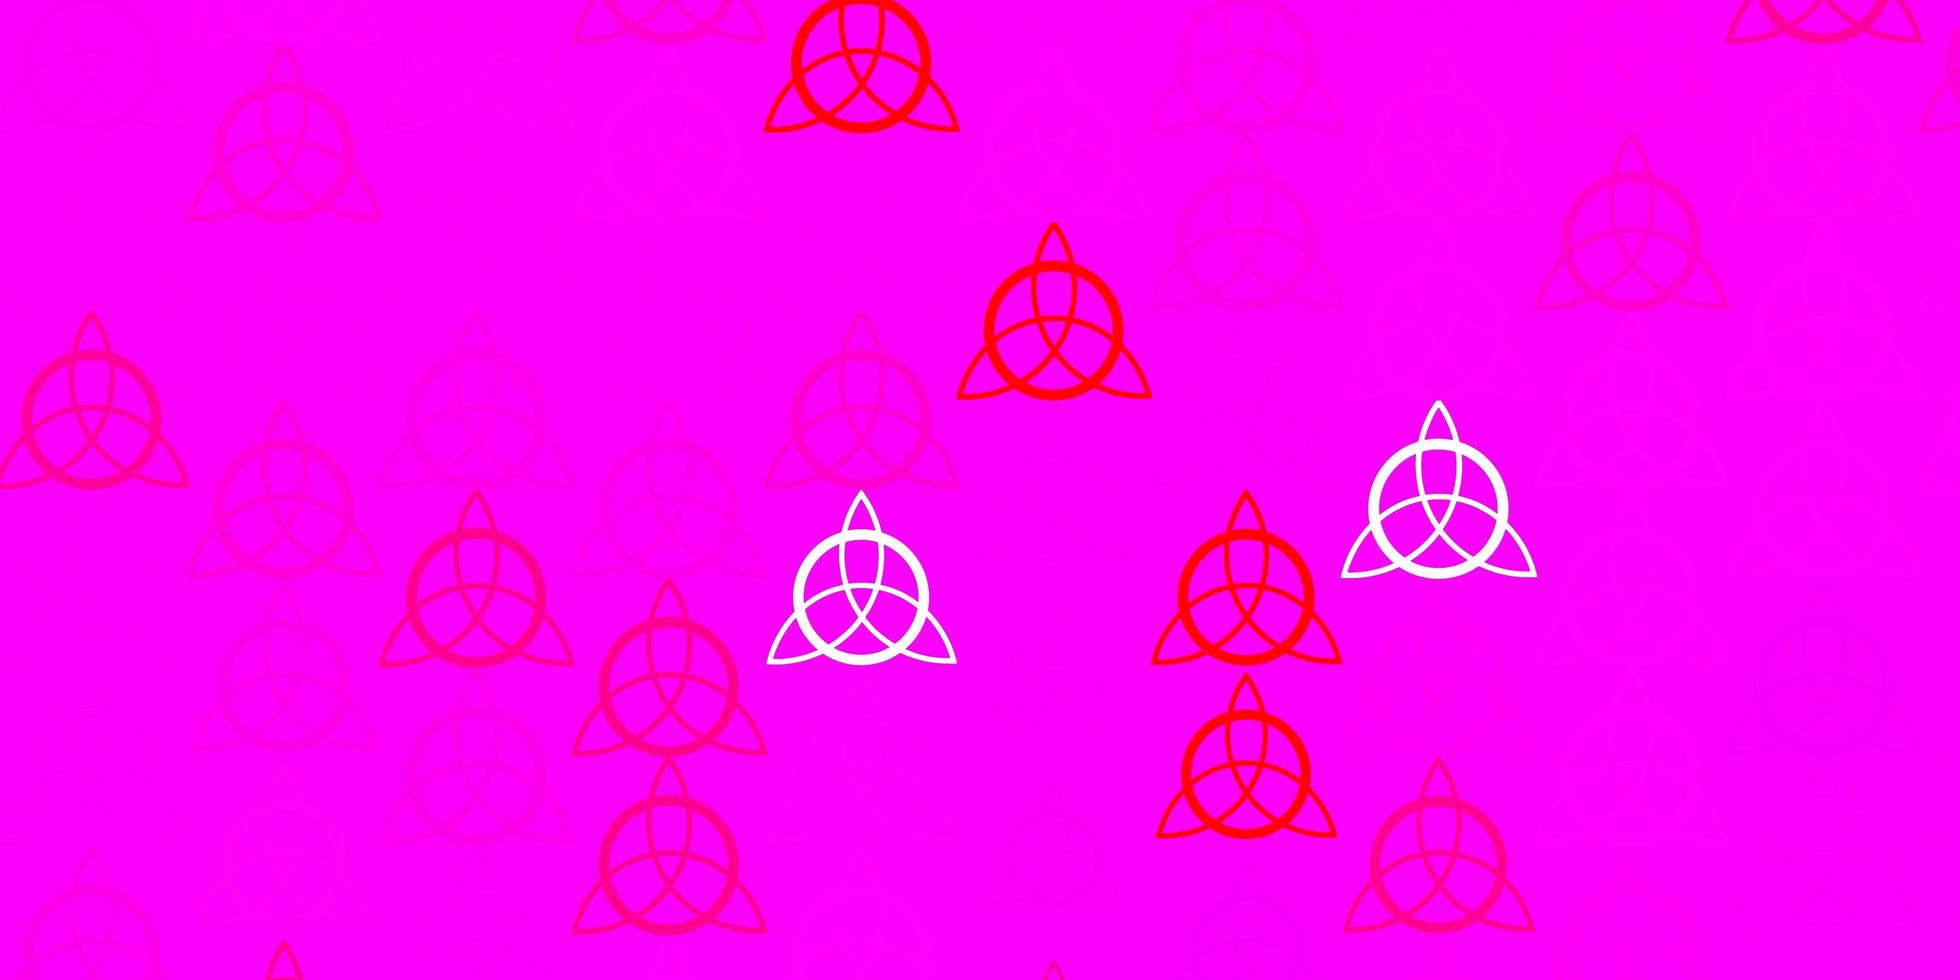 Fondo de vector rojo rosa claro con símbolos misteriosos